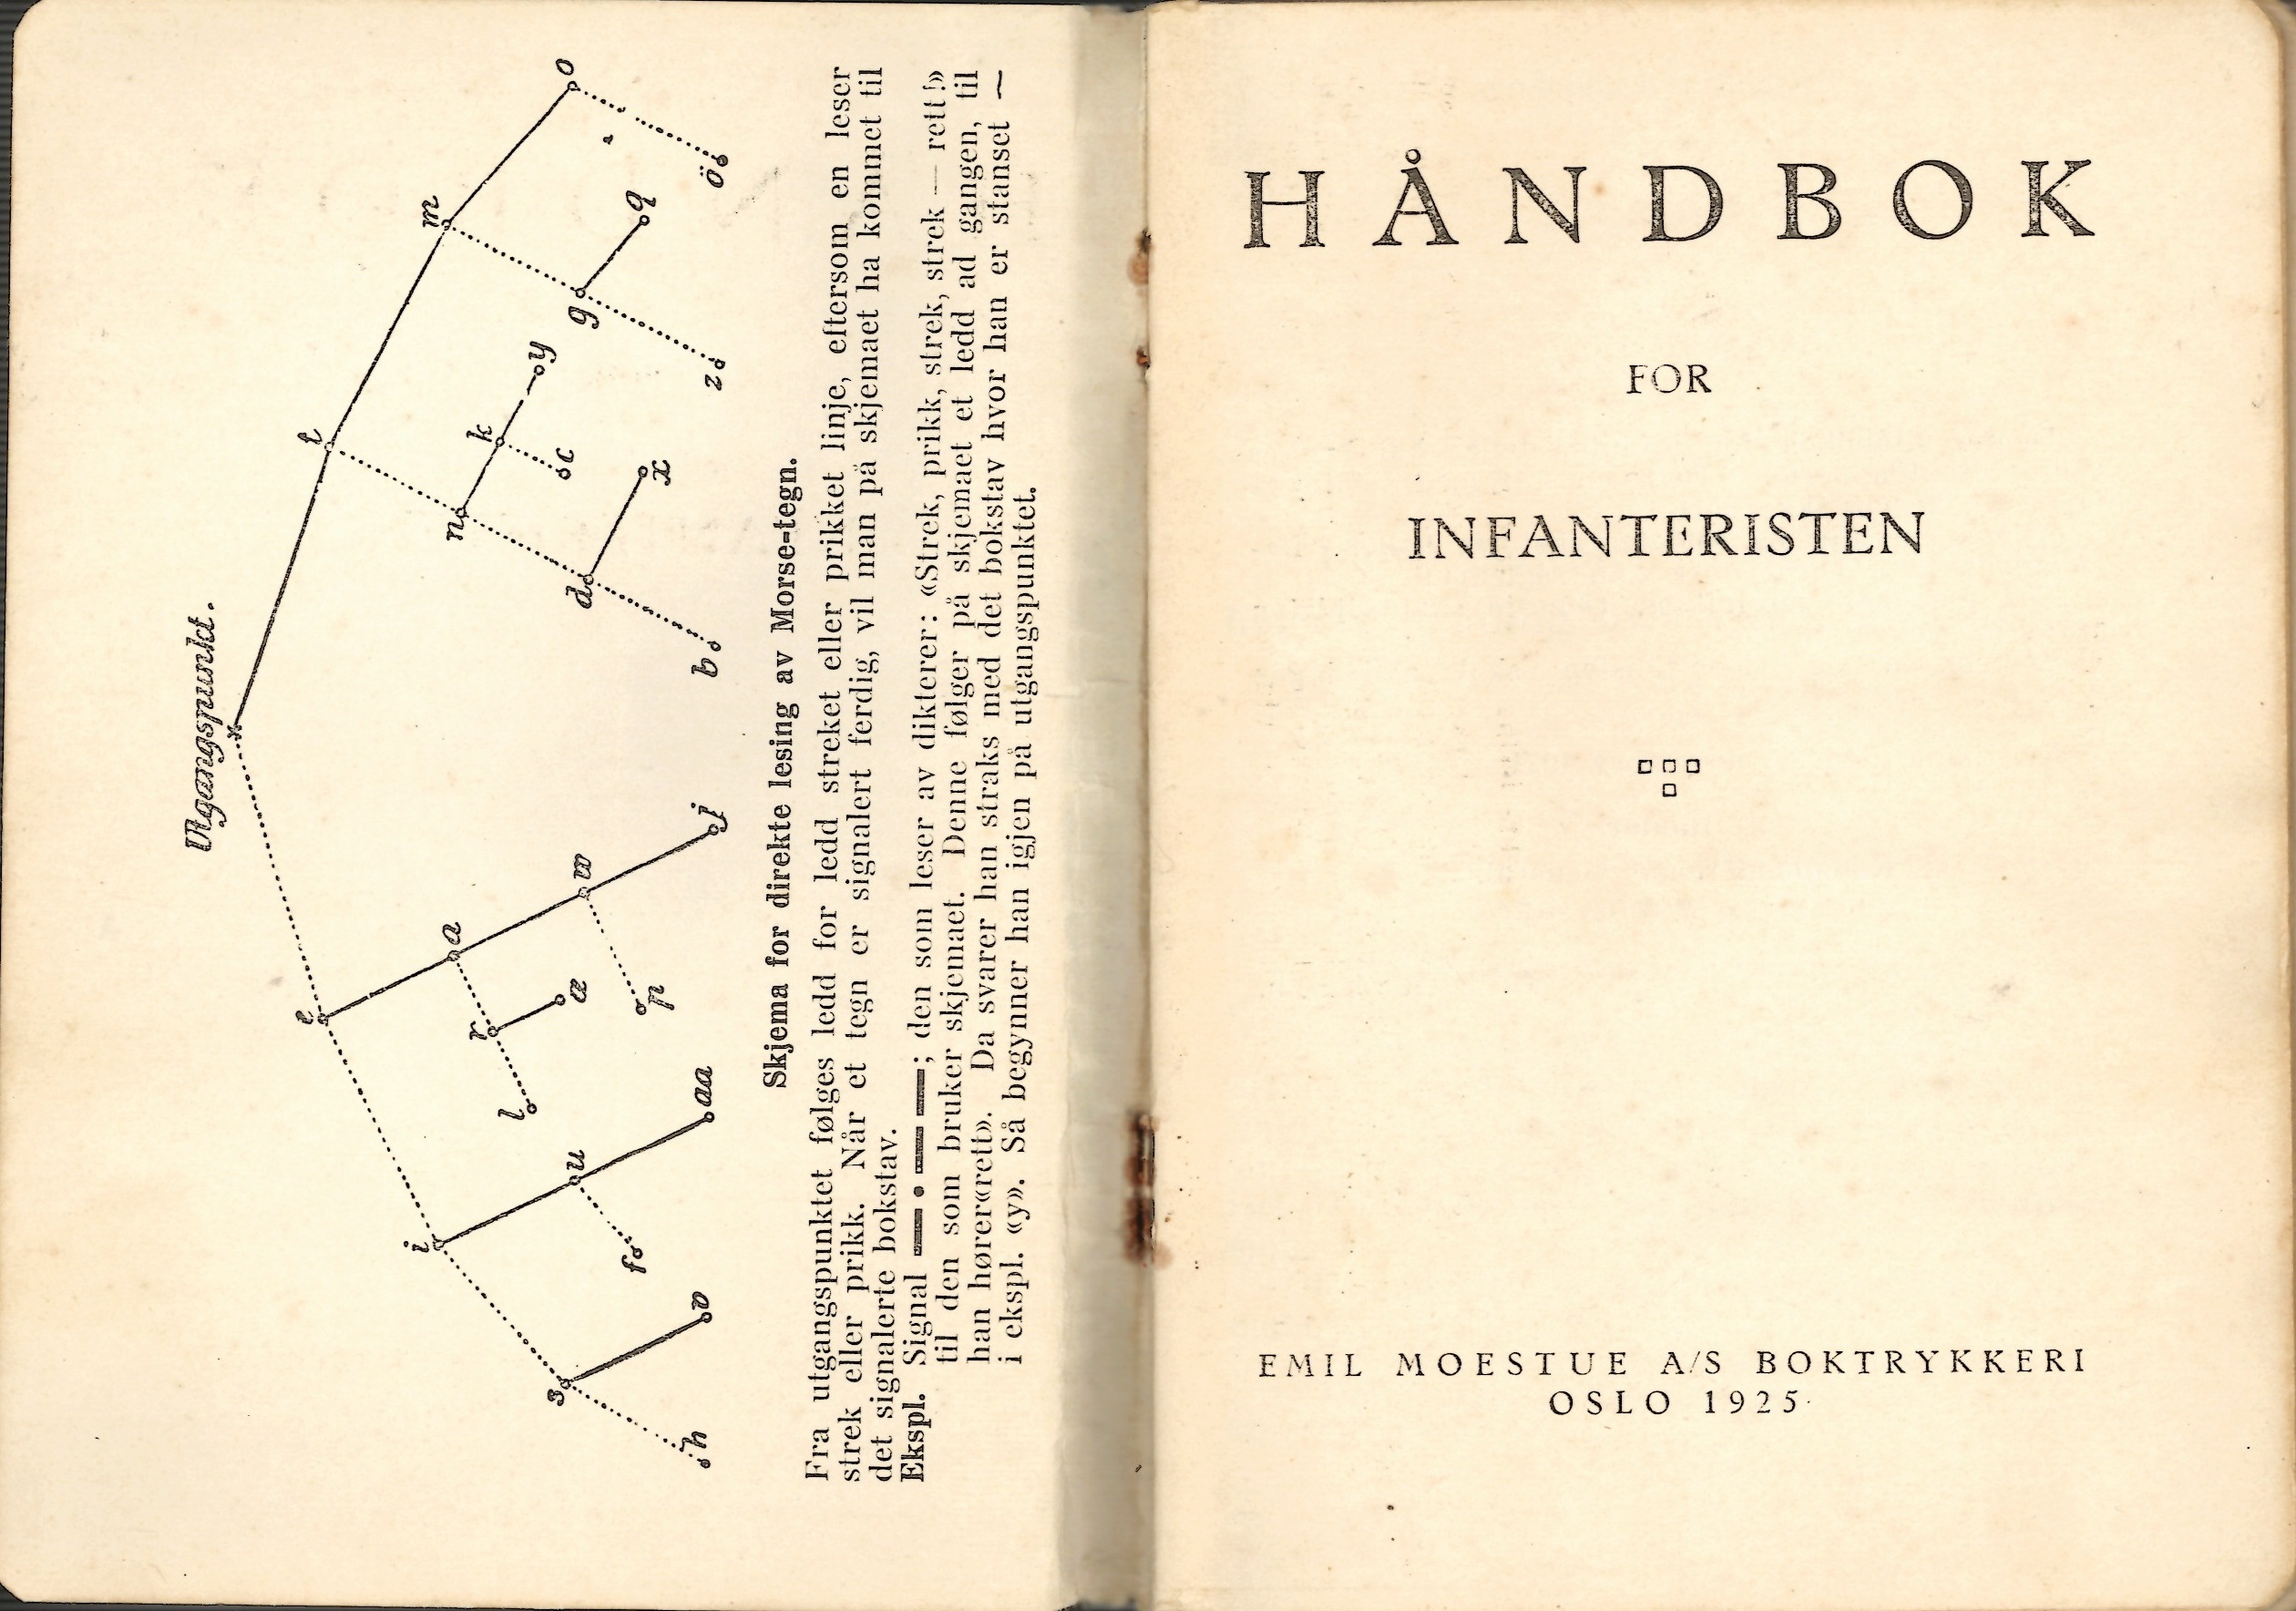 ./doc/reglement/Haandbok1925/Haandbok-for-infanteristen-1925-2.jpg